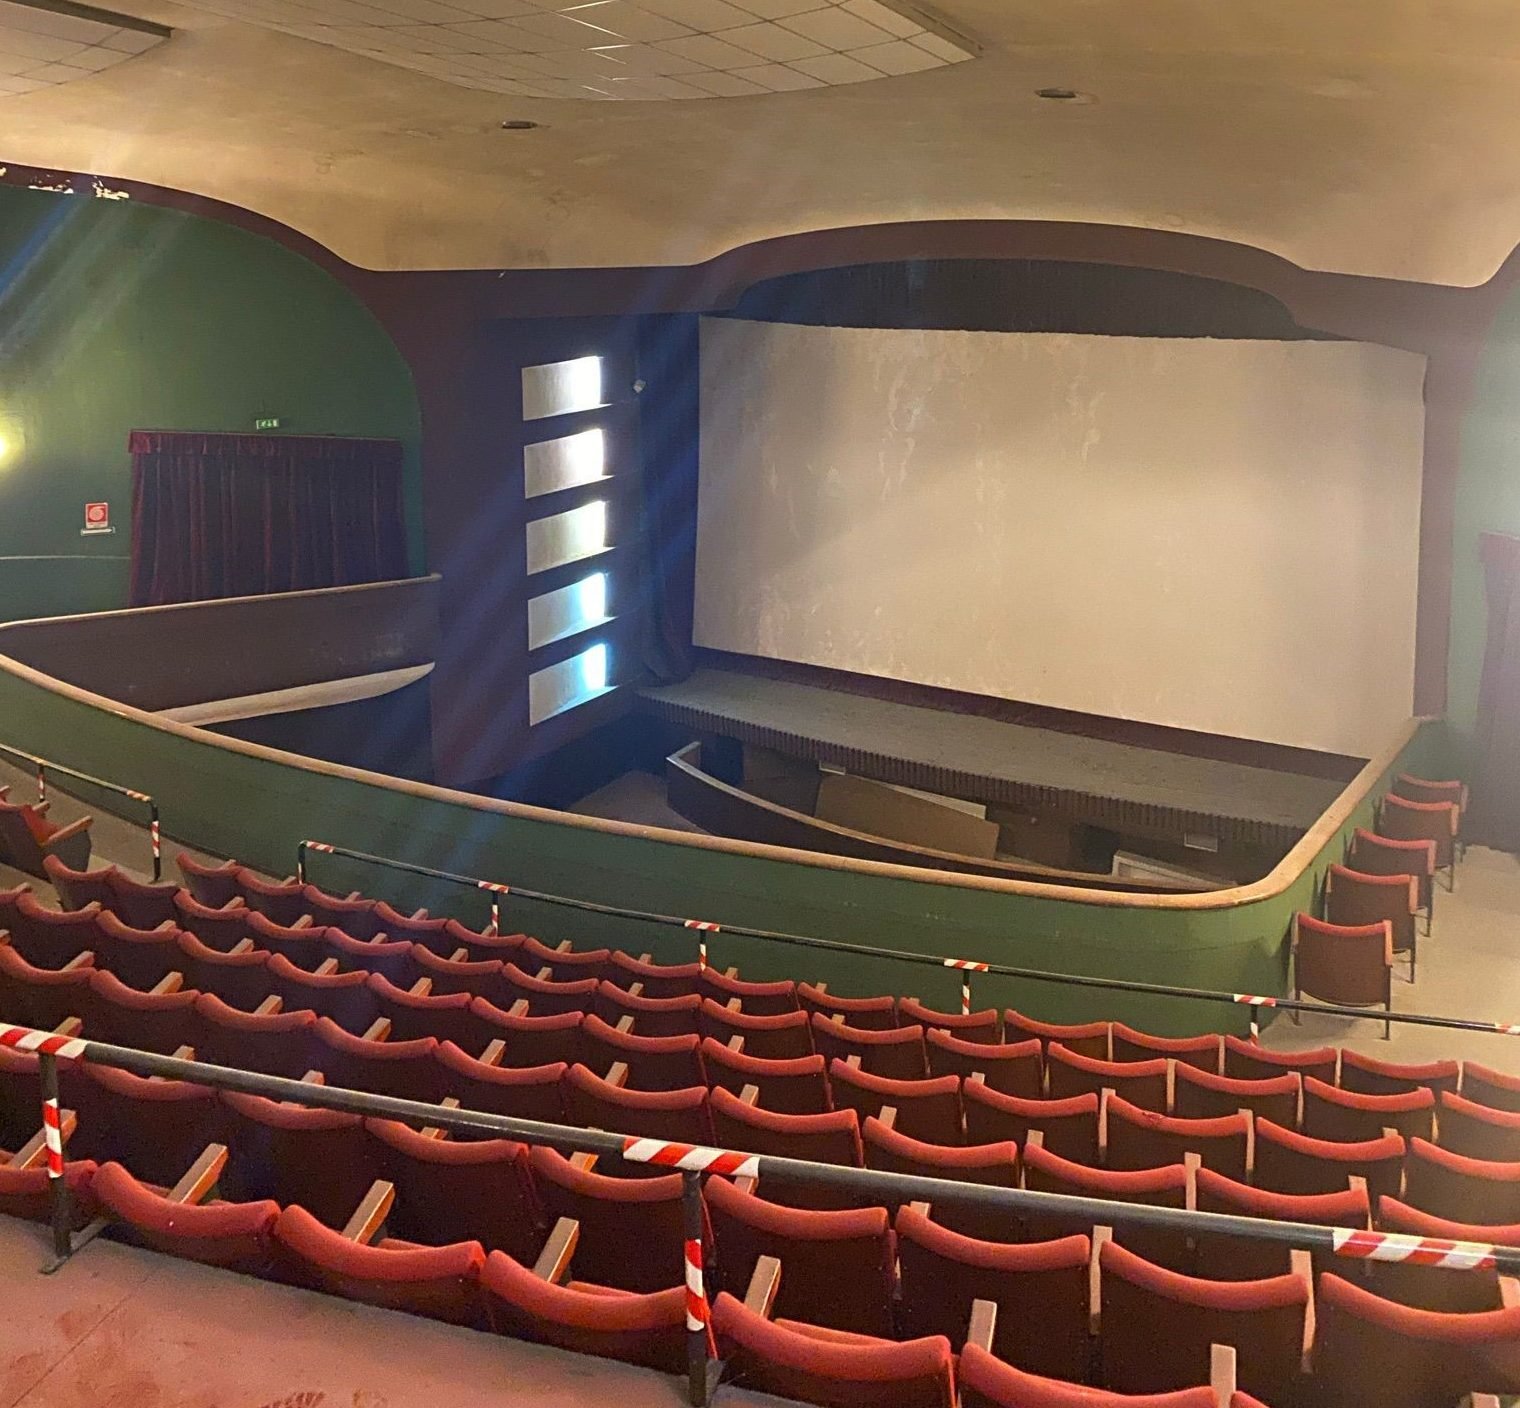 Chiuso da anni l’ex cinema Galleria è un luogo che “merita di rivivere”